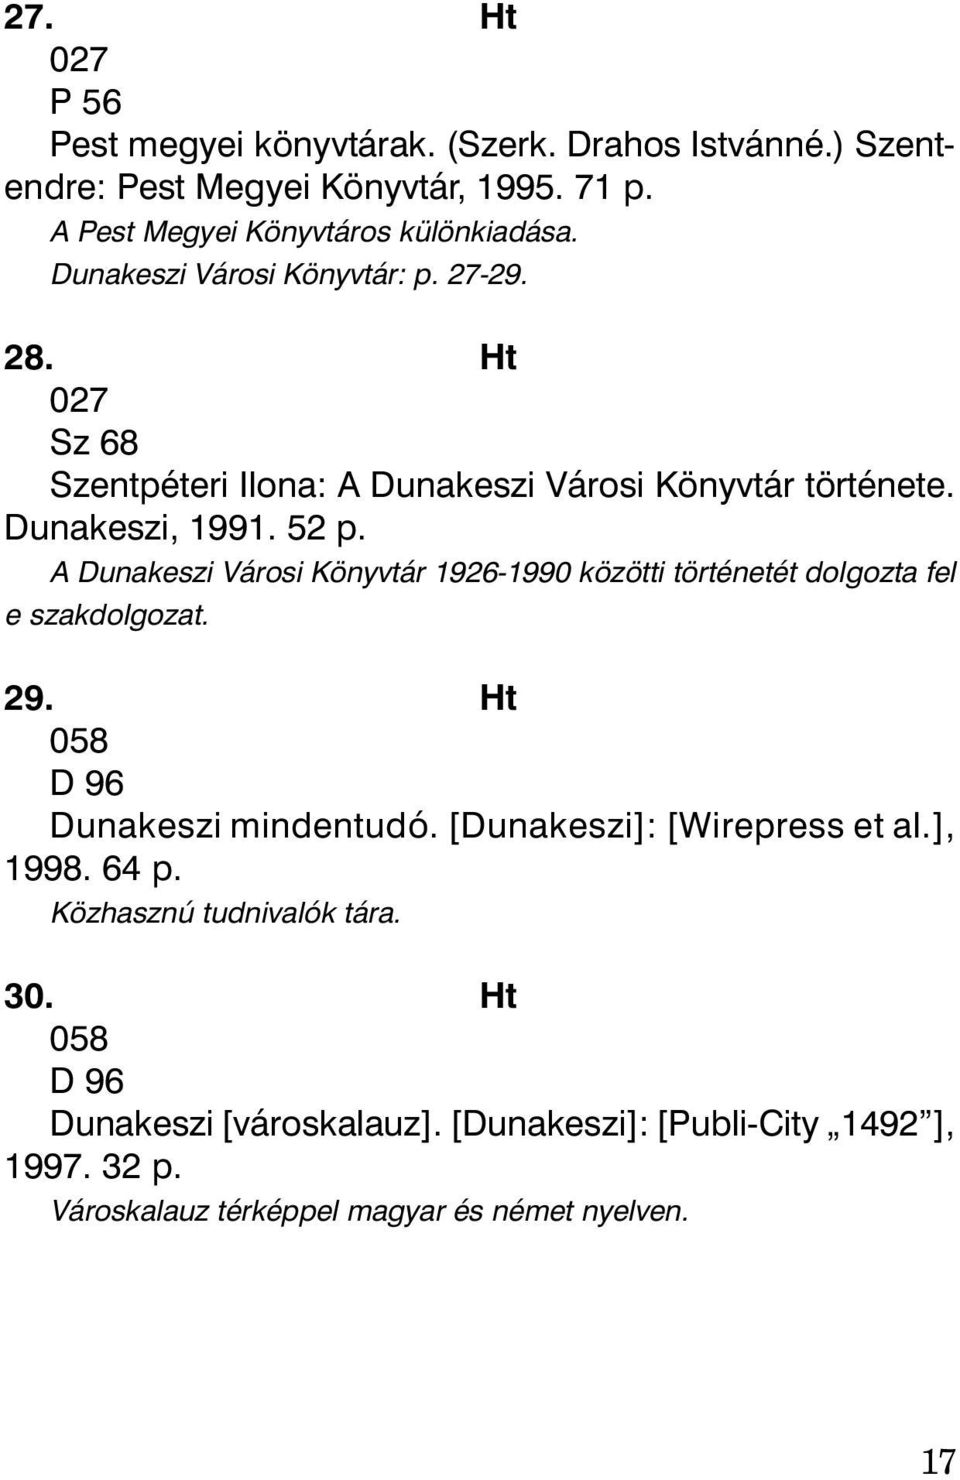 A Dunakeszi Városi Könyvtár 1926-1990 közötti történetét dolgozta fel e szakdolgozat. 29. Ht 058 D 96 Dunakeszi mindentudó. [Dunakeszi]: [Wirepress et al.